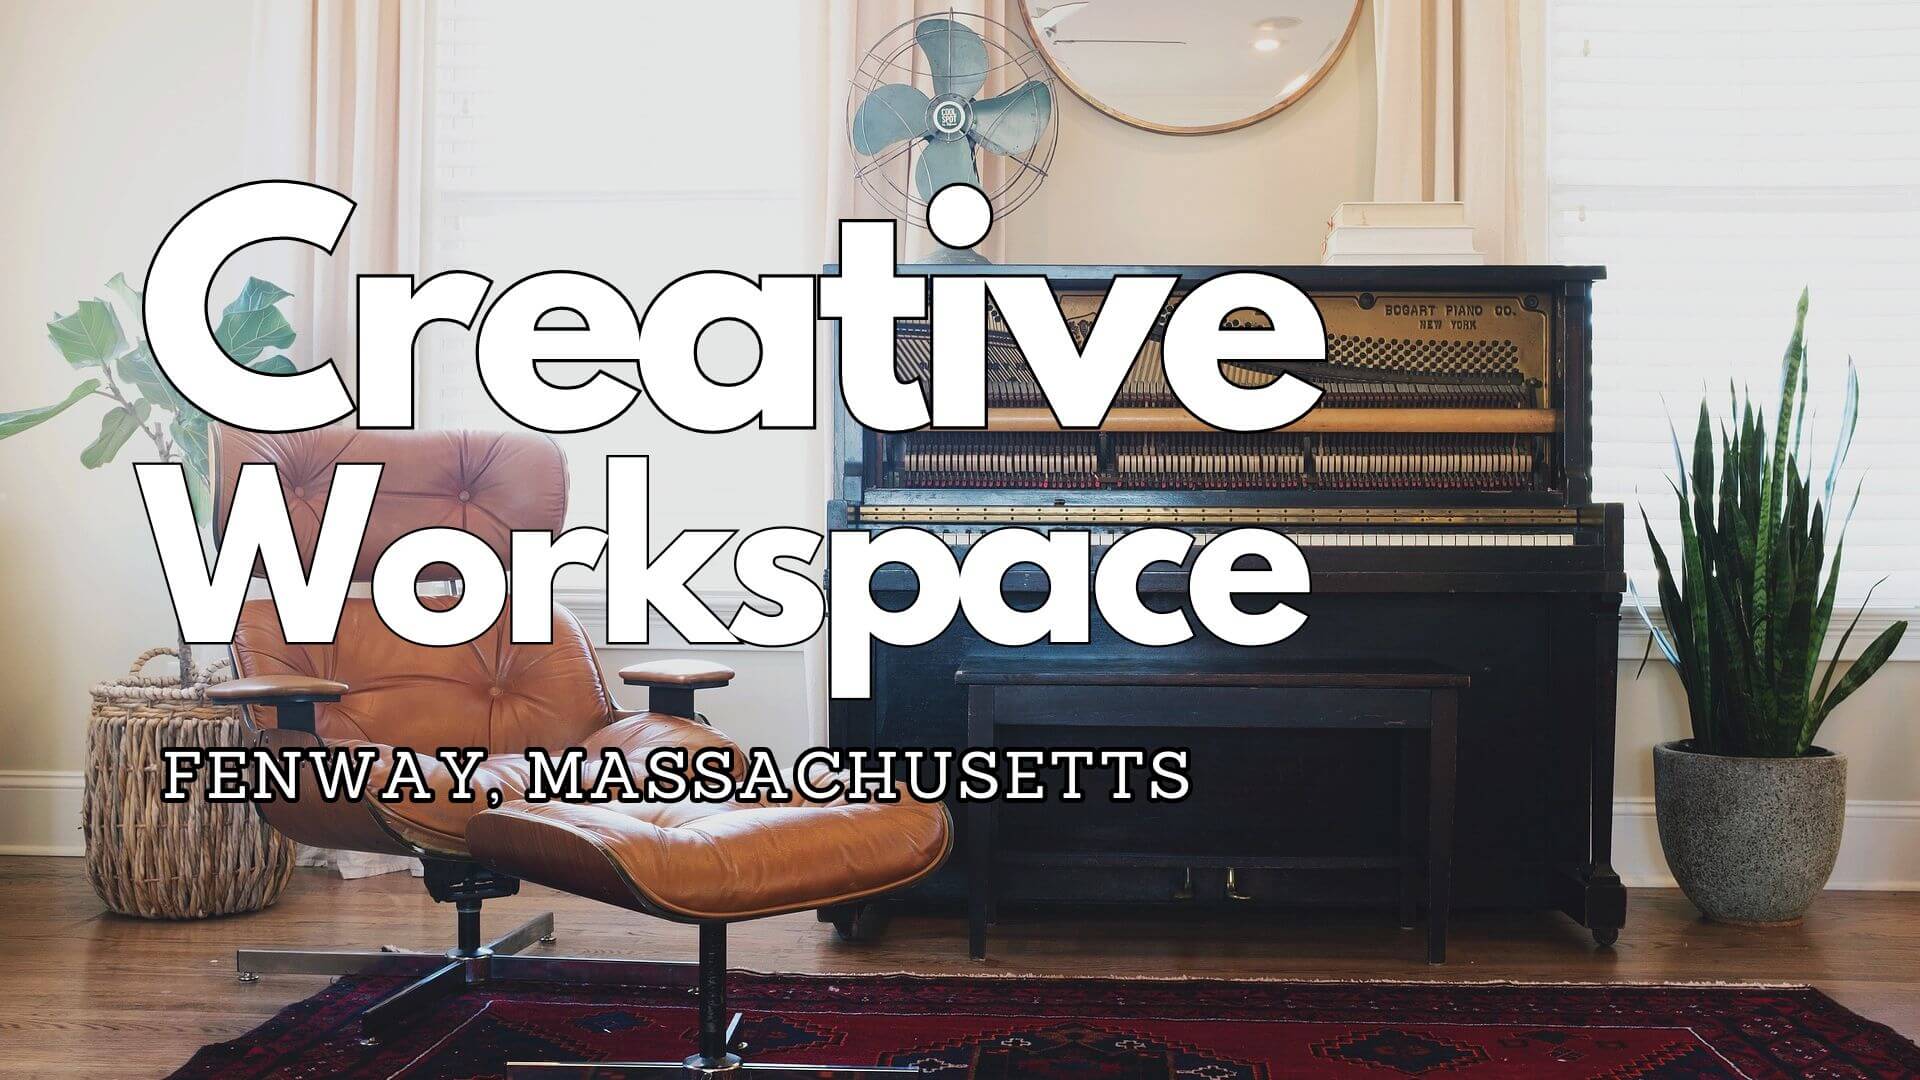 Creative Workspace in Fenway, Massachusetts: Musicians Playground